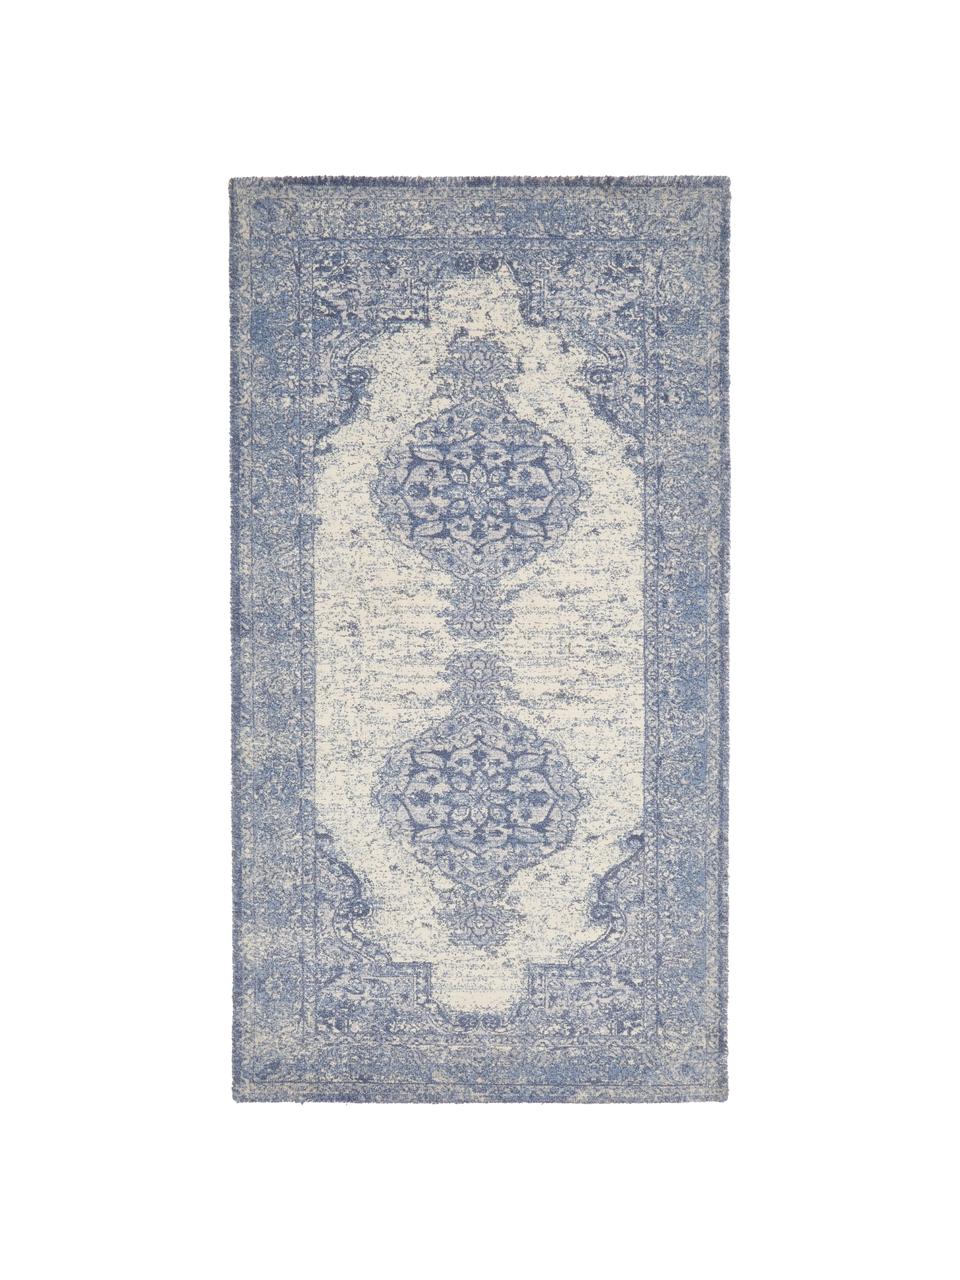 Dywan w stylu vintage Elegant, Niebieski, S 120 x D 180 cm (Rozmiar S)